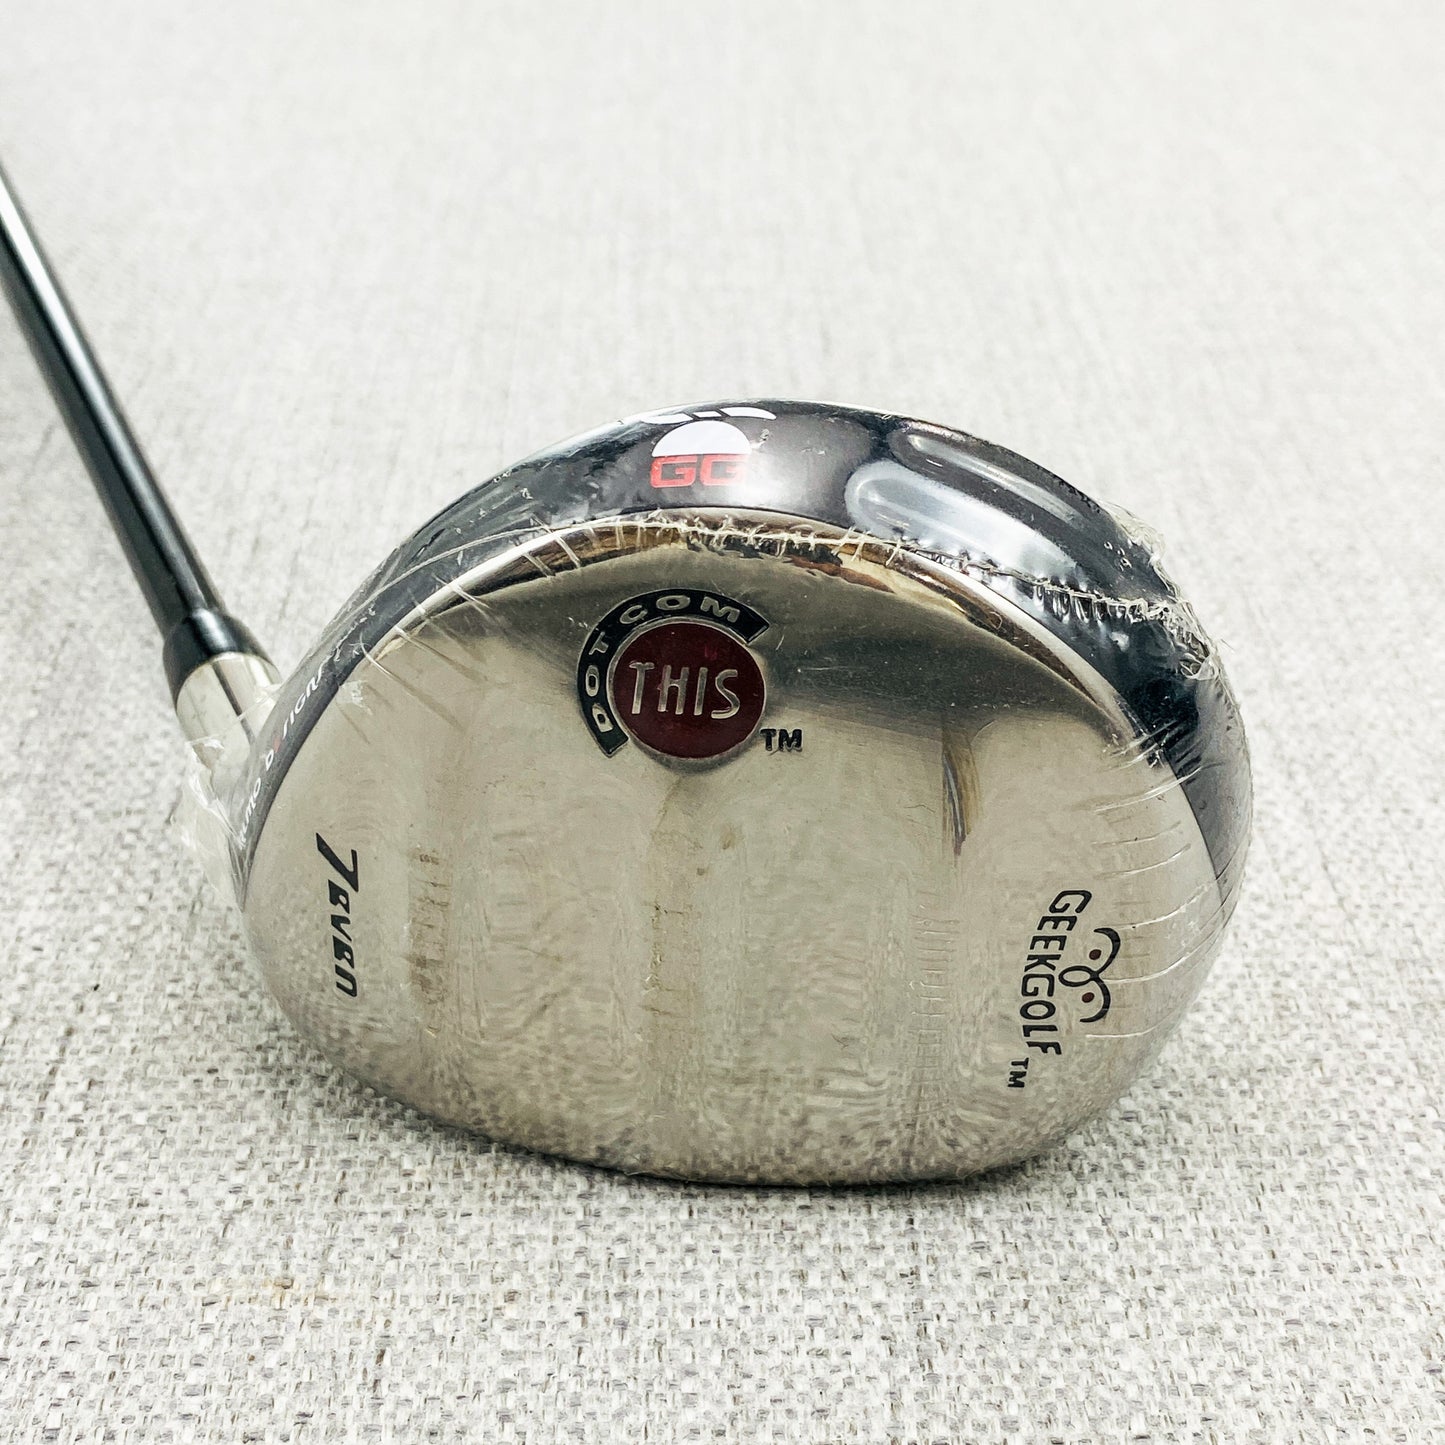 GEEK Golf Dot Com This 7-Wood. 21 Degree, Regular Flex - Brand New # 12470